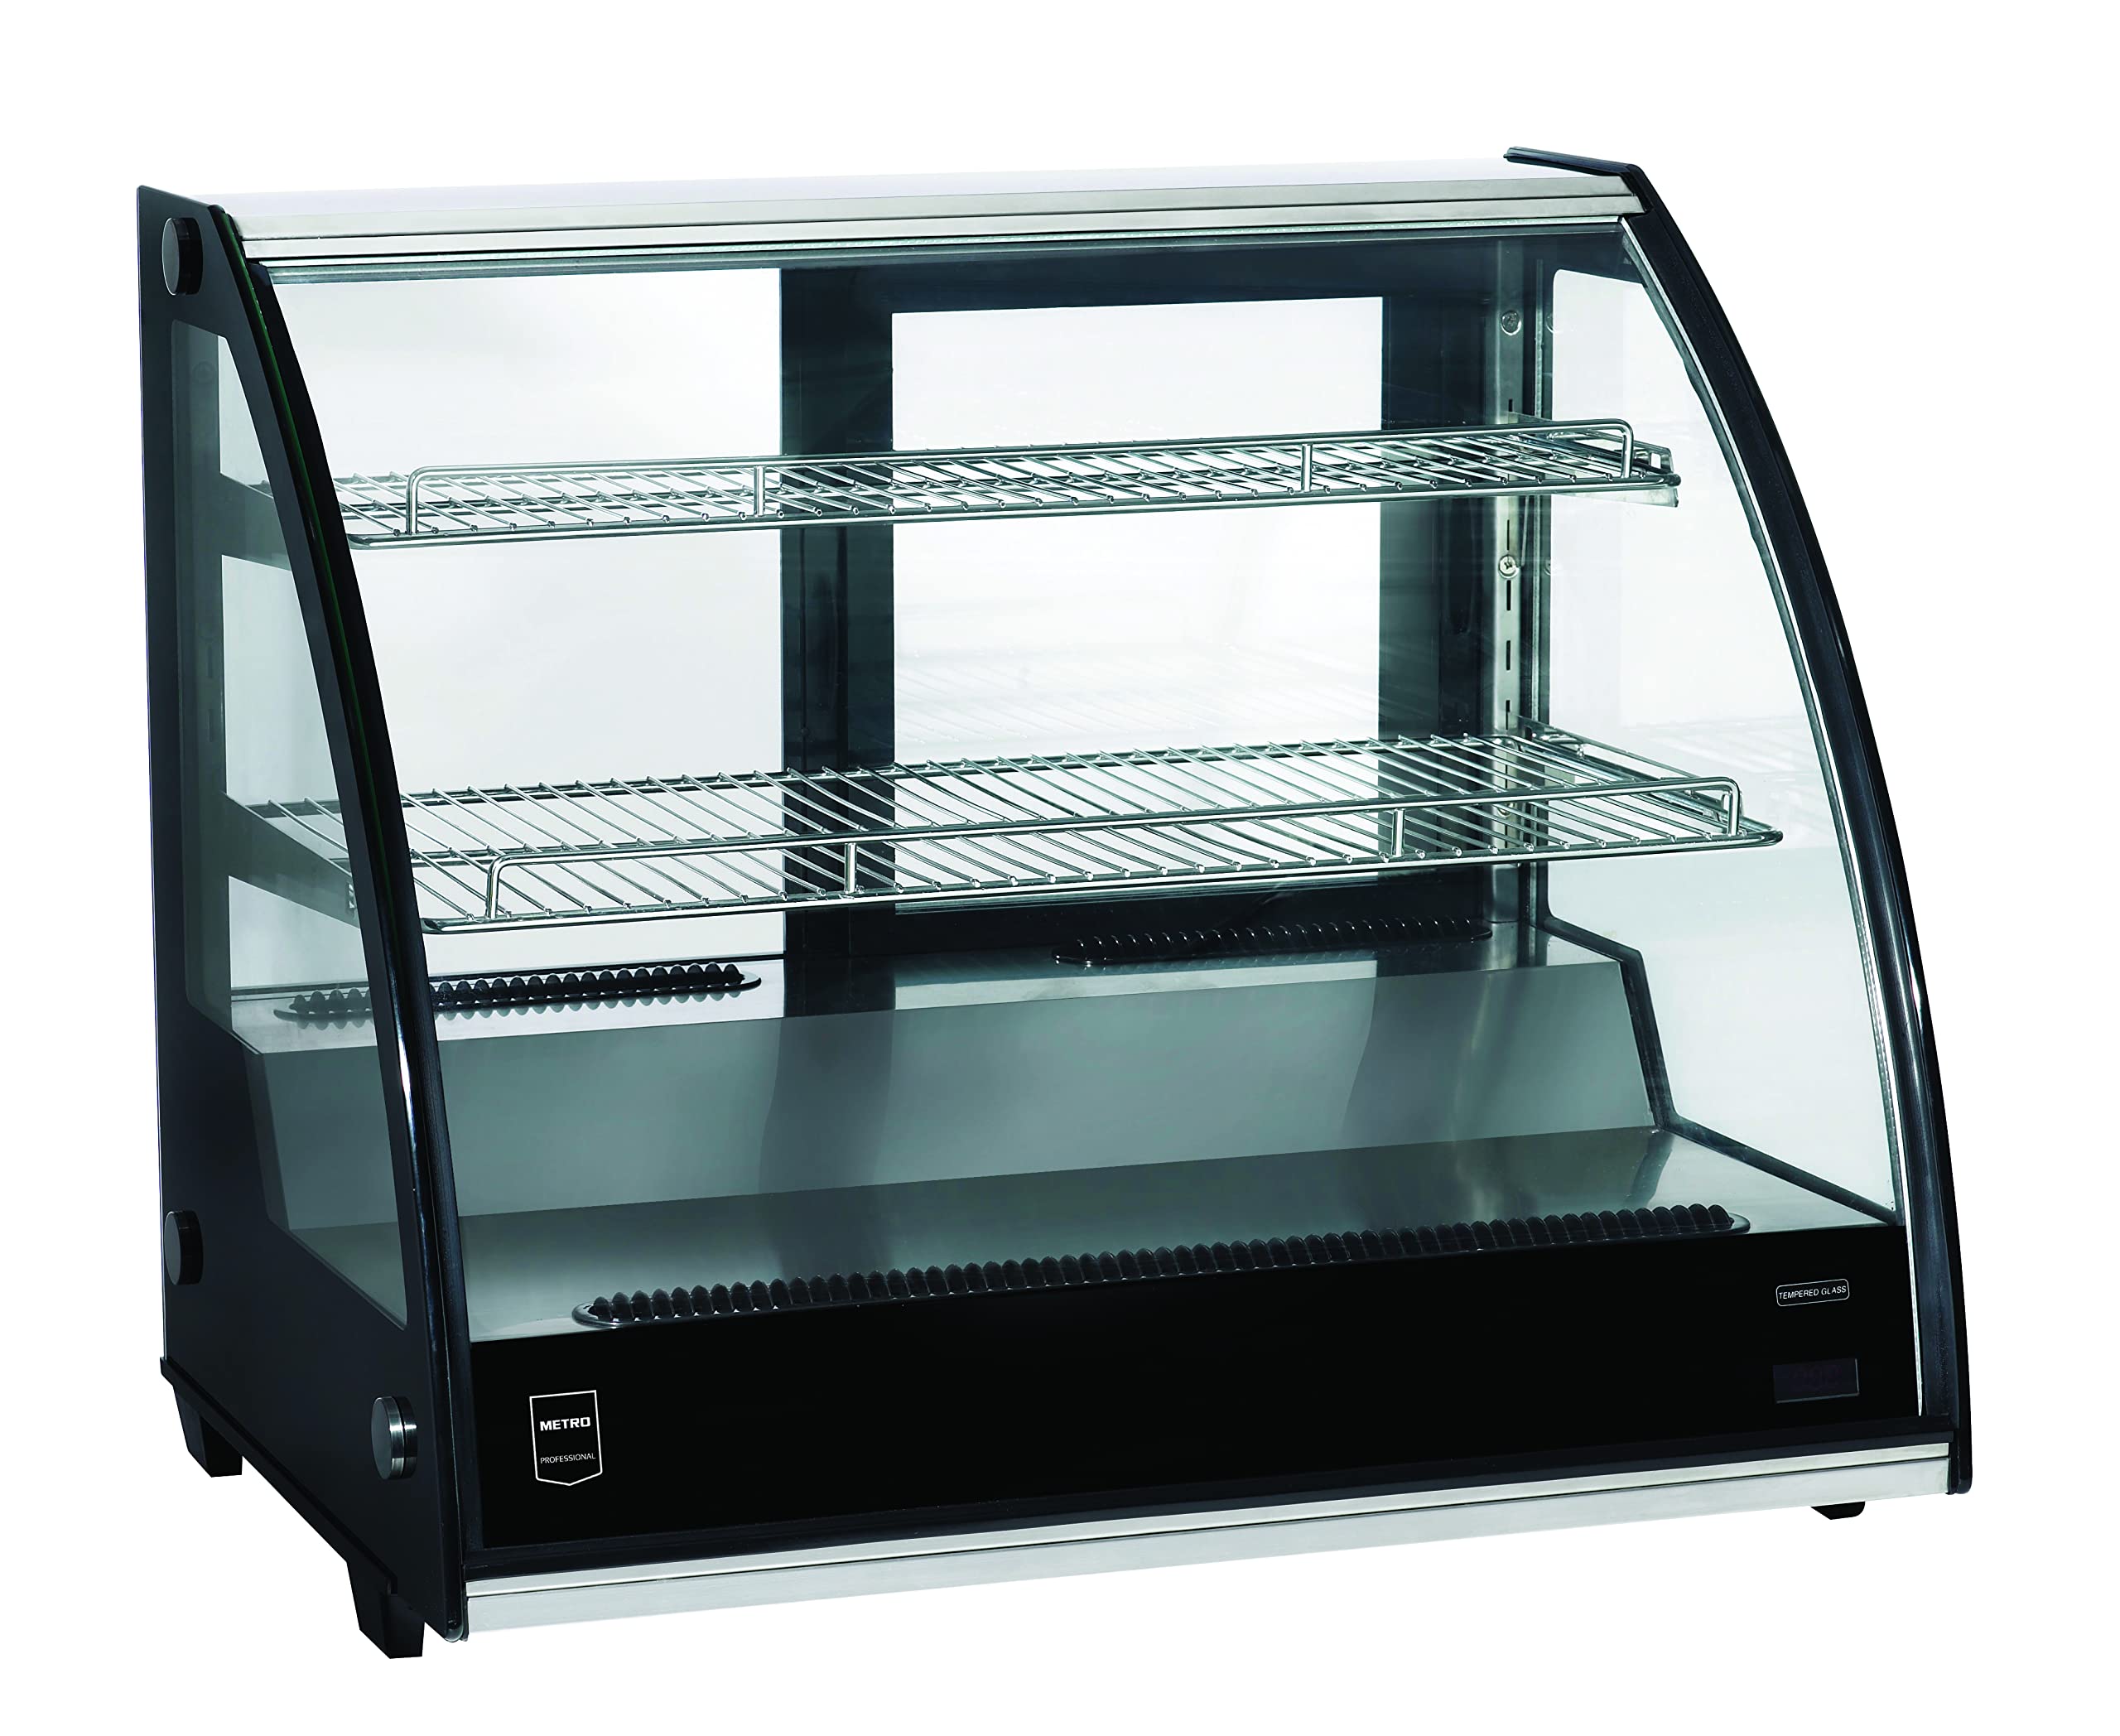 METRO Professional Kühlvitrine GCV1600, Edelstahl/Glas, 130 L, Umluftkühlung, 200 W, verstellbare Regale, schwarz